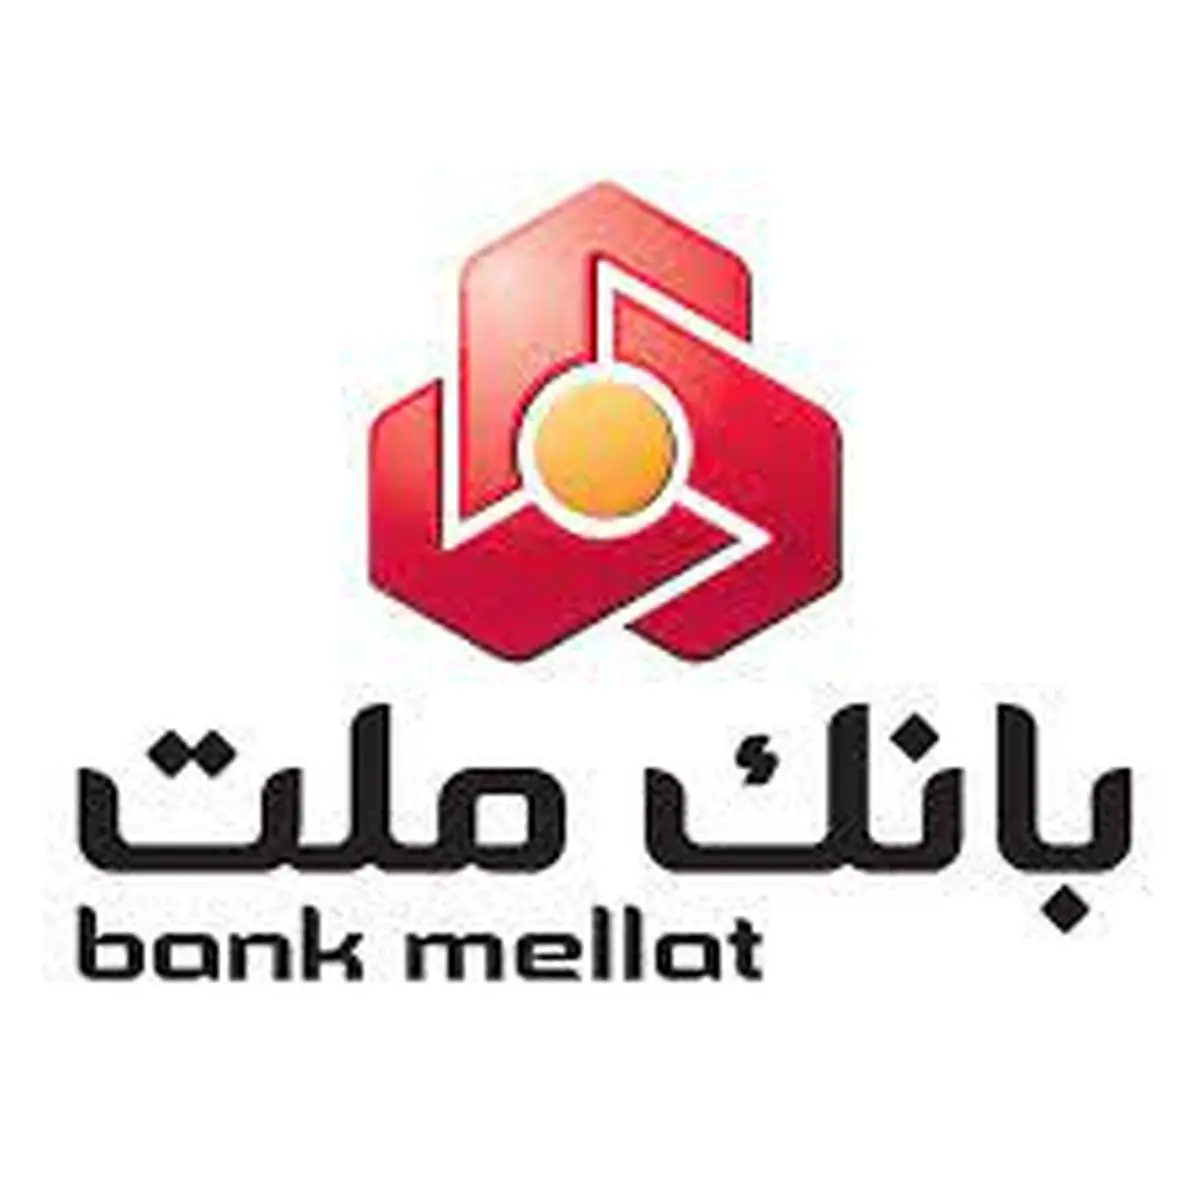 افزایش سقف برداشت نقدی خودپردازهای بانک ملت در 5 استان